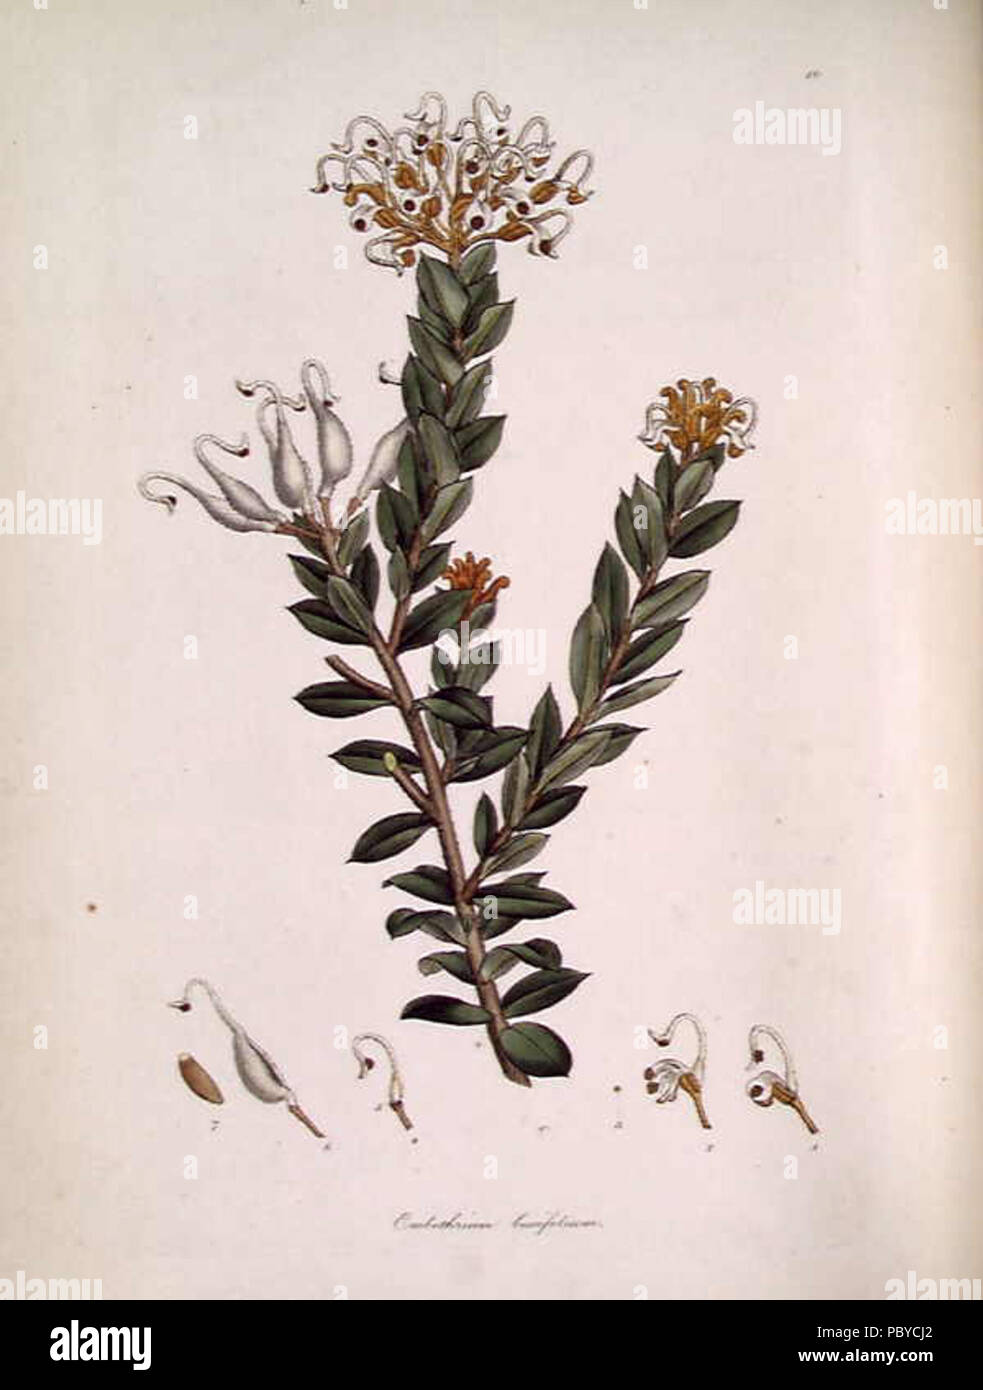 185 Embothrium (Grevillea) buxifolium Stock Photo